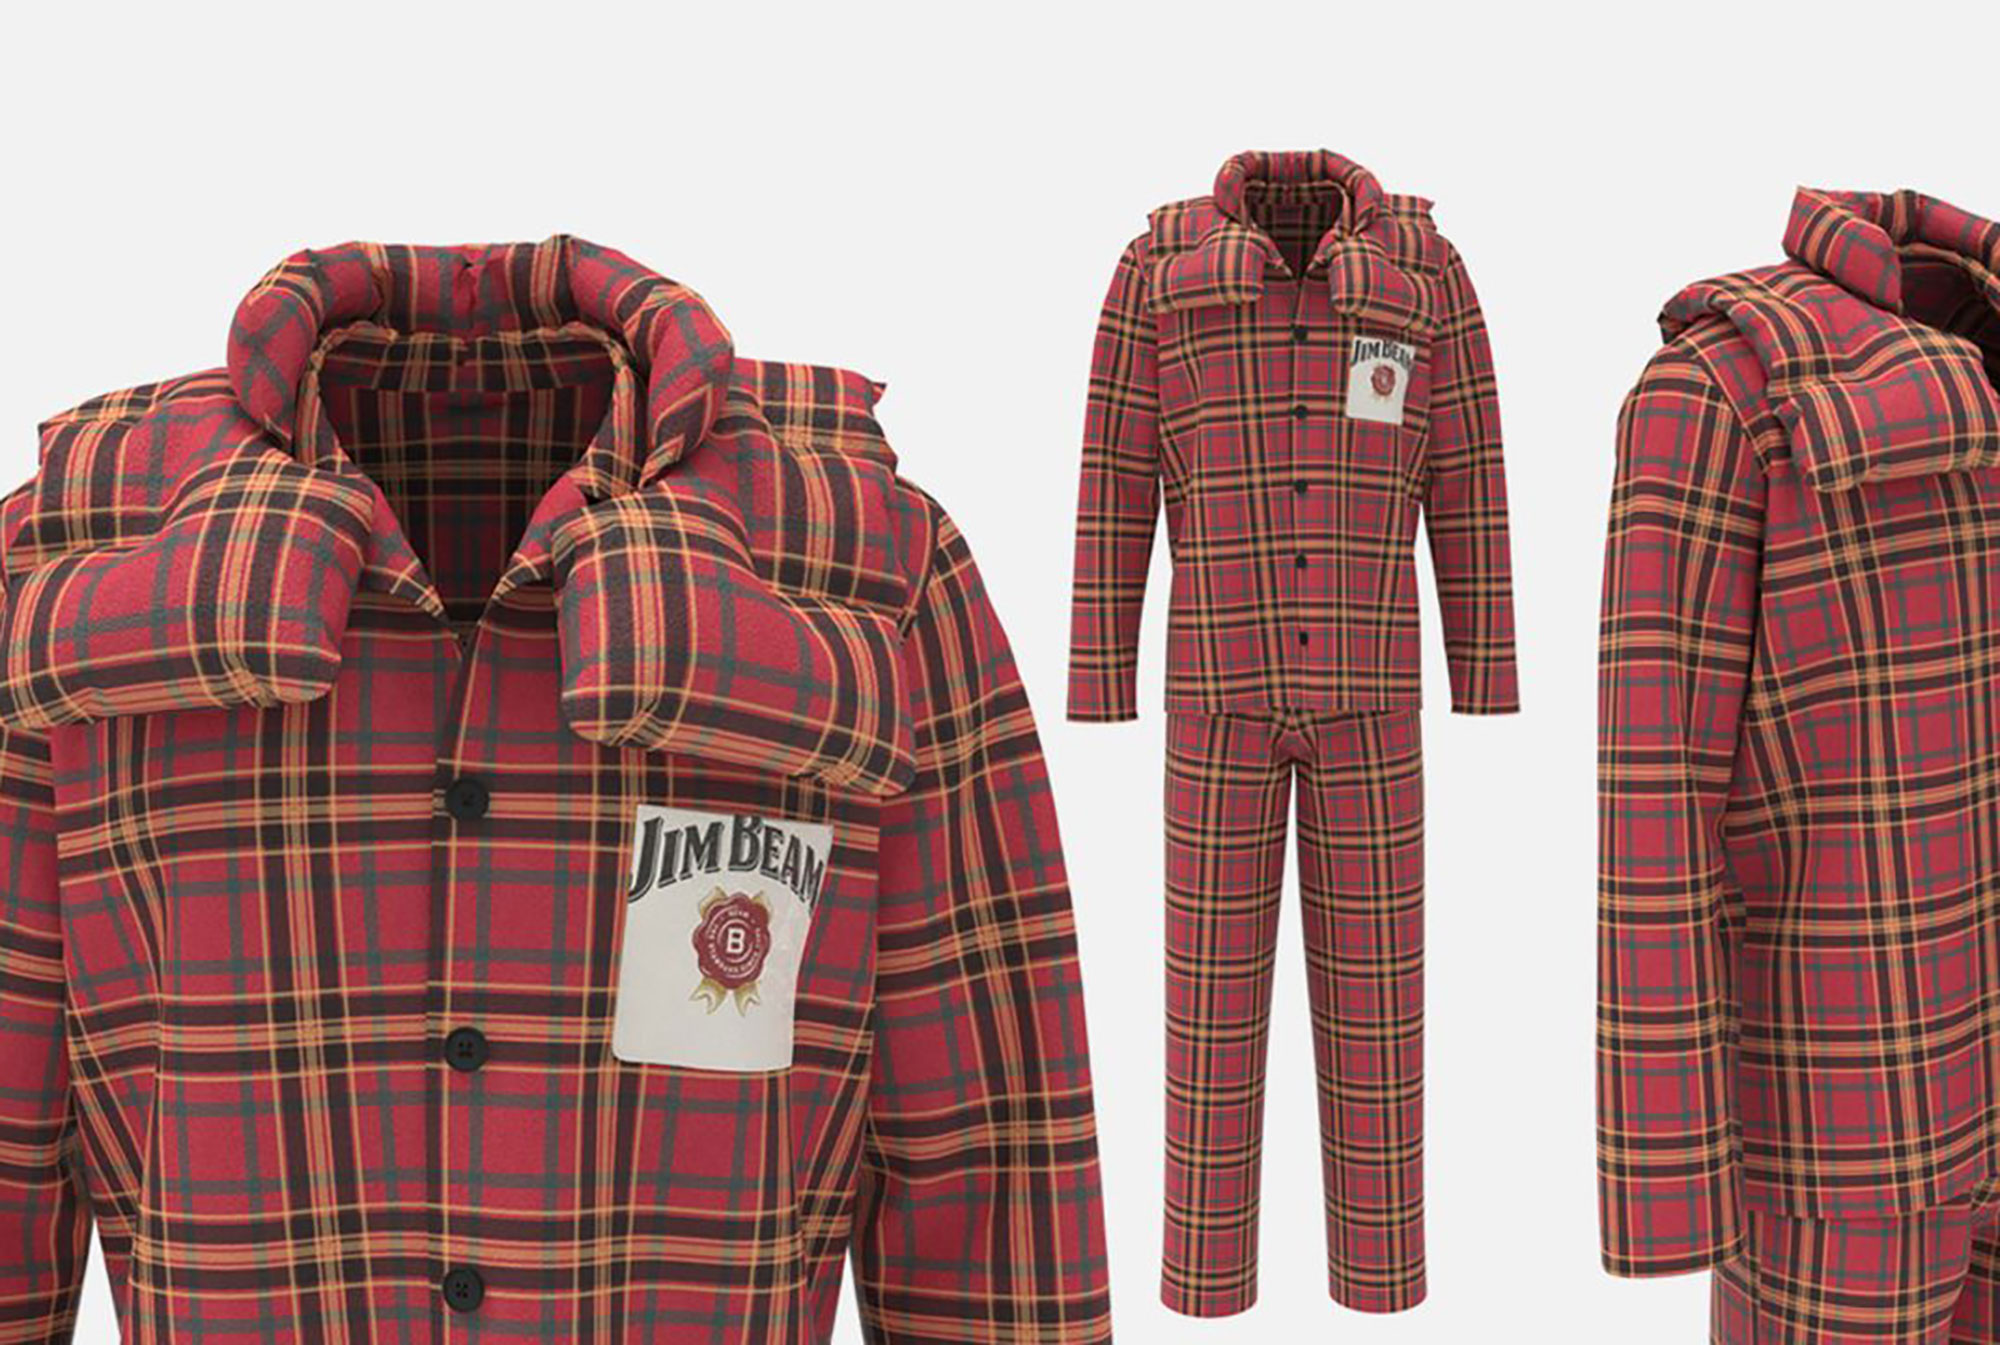 Marca de Bourbon lanza pijamas que simulan abrazos para las personas solitarias en Navidad